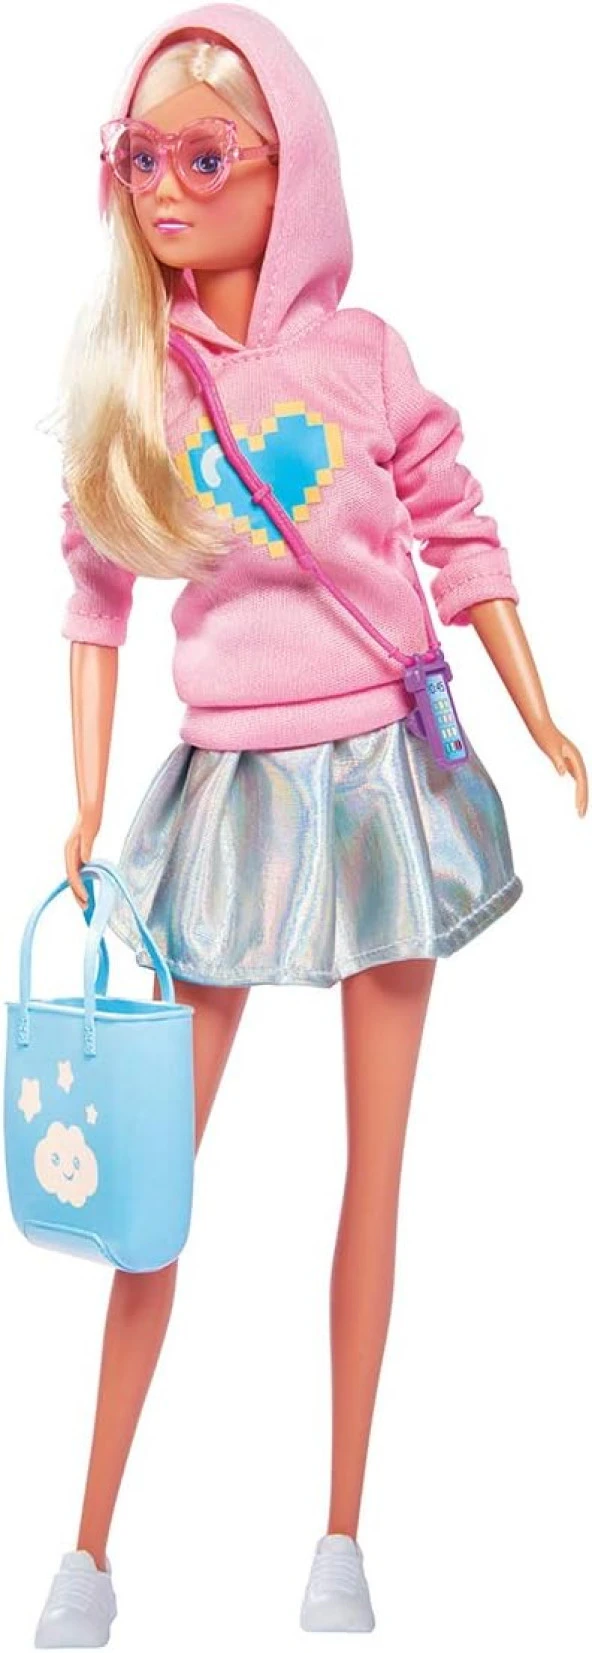 105733479, Steffi Love Bebek Moda Kıyafetli, Pastel Tonlar, Telefon ve Çanta aksesuarı ile birlikte, 29 cm, Pastel Fashion